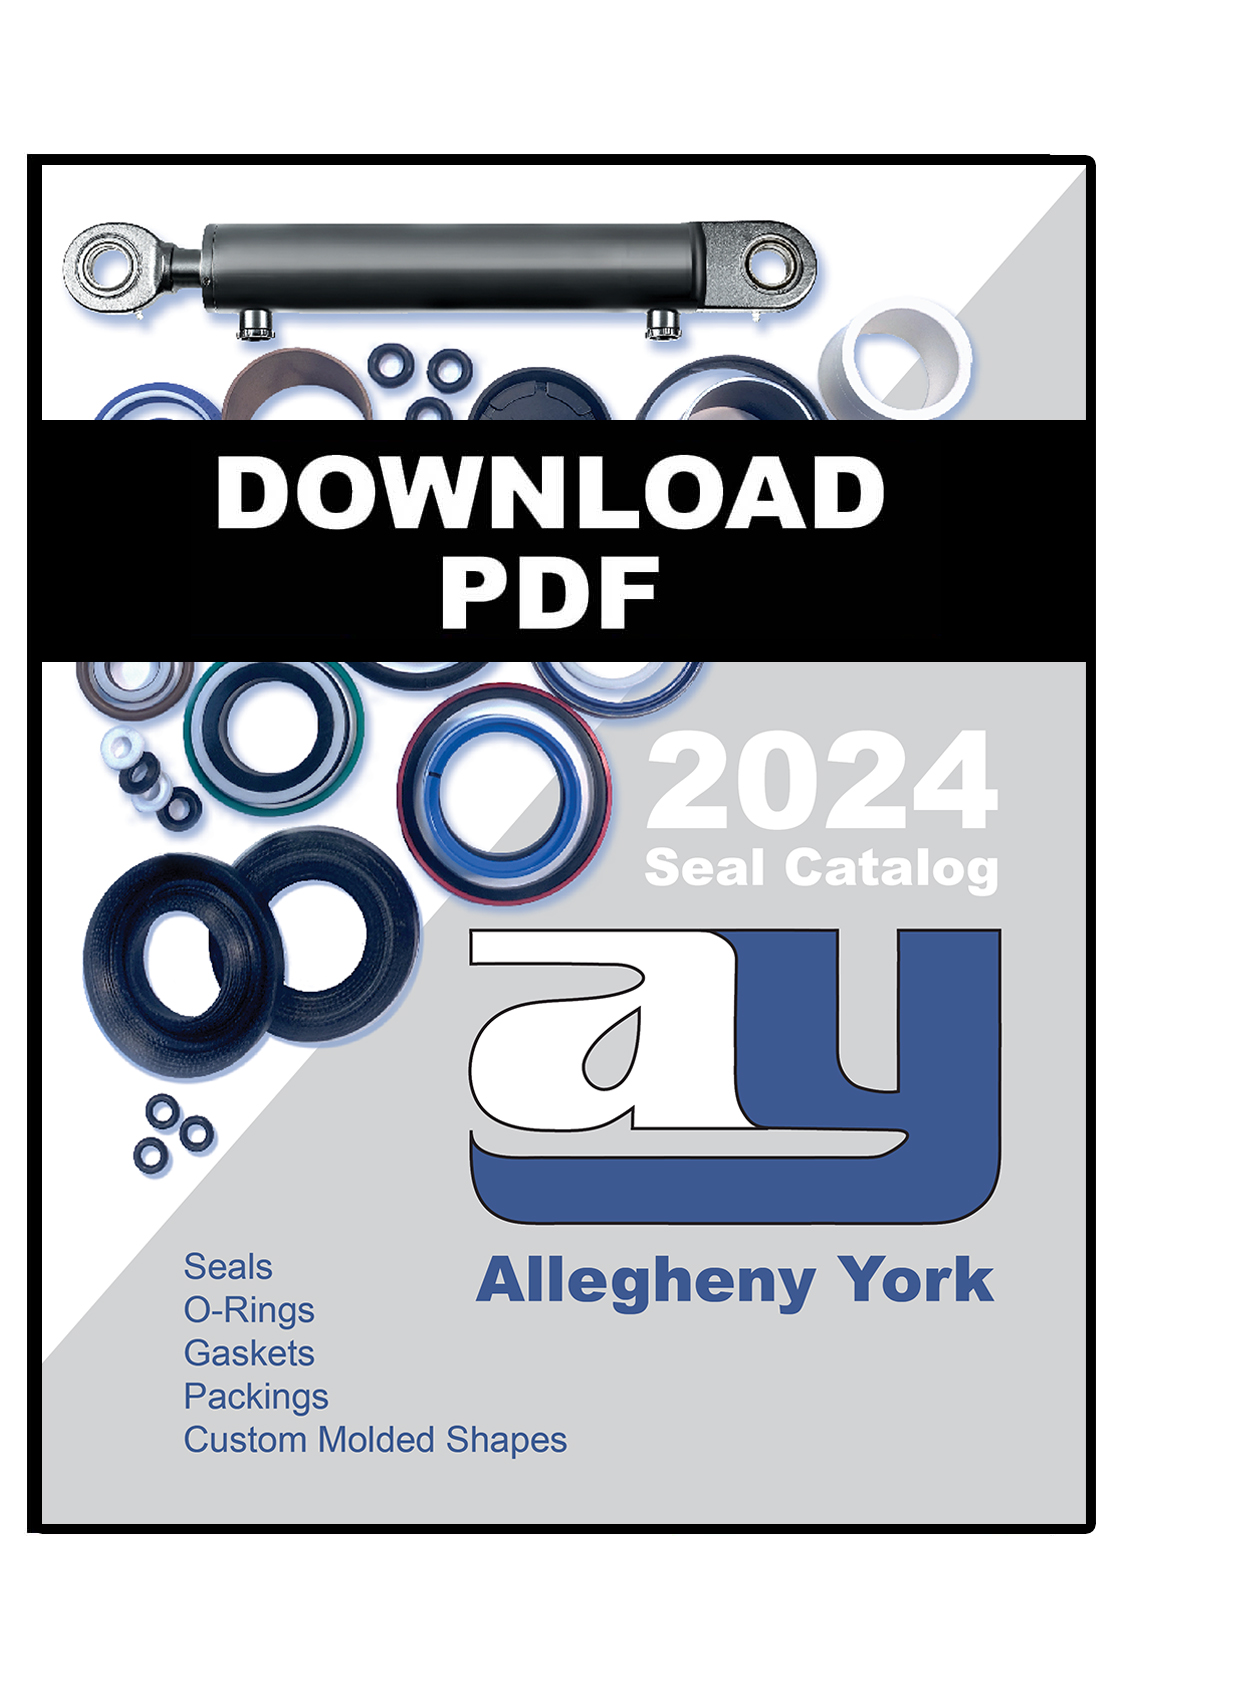 Allegheny York 2024 Catalog PDF